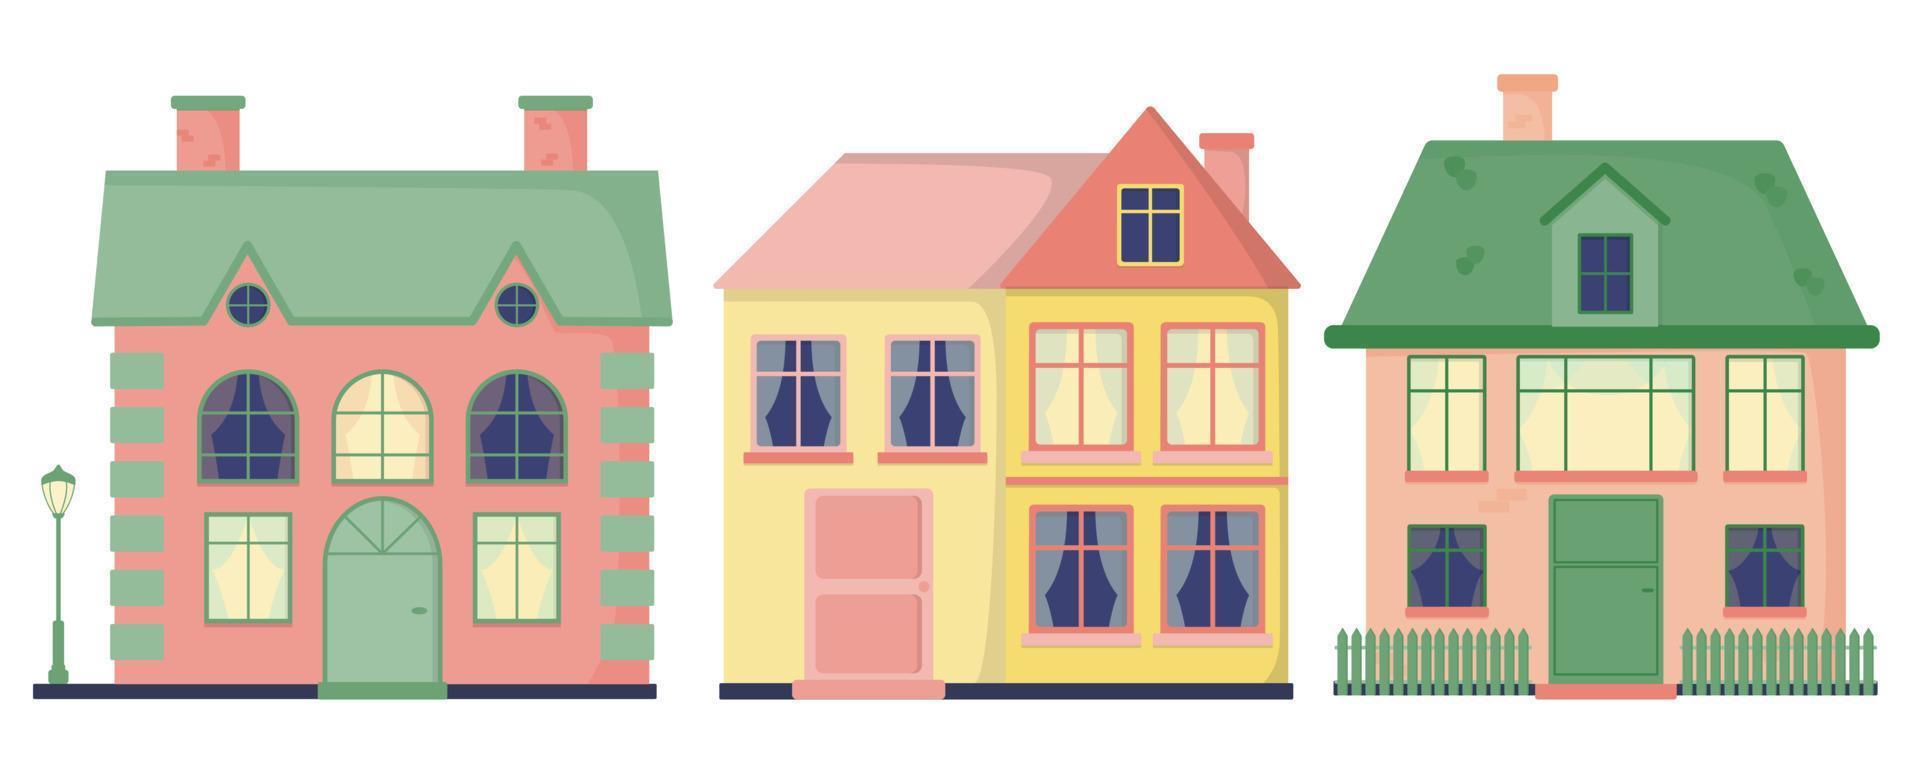 un conjunto de casas con ventanas, tejas, chimeneas. farola. valla. ilustración de vector plano de color aislado en un fondo blanco.